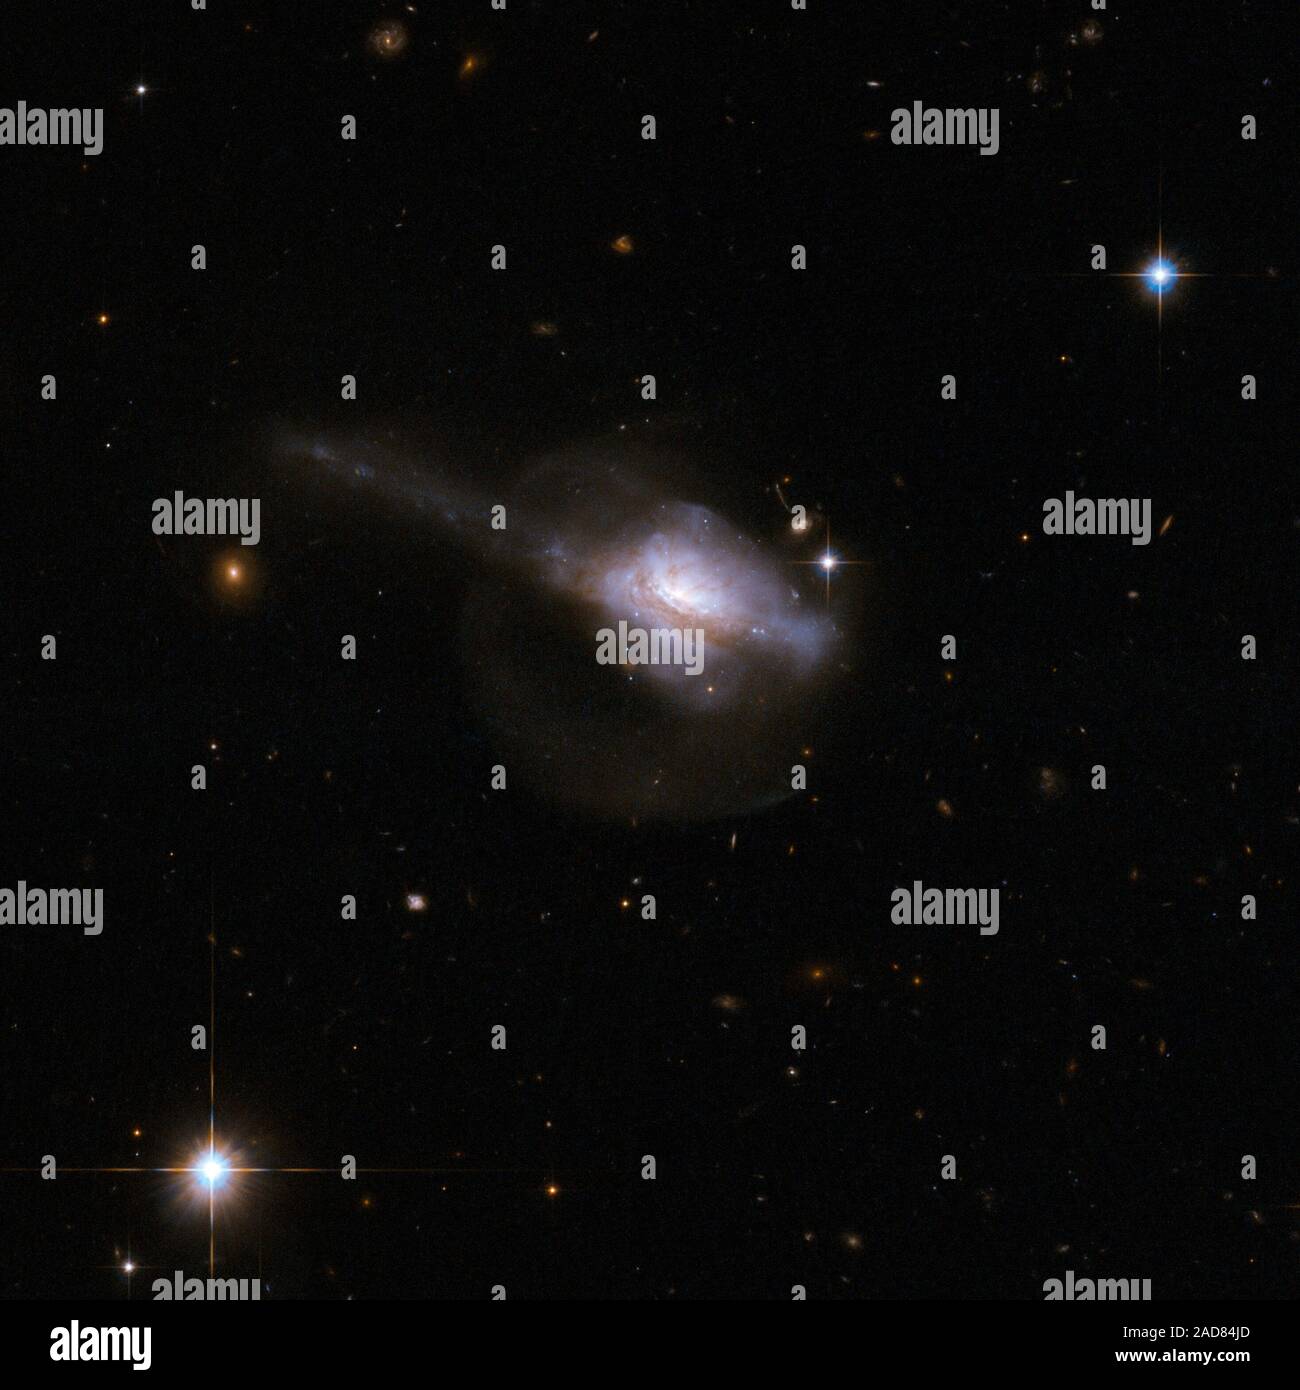 UGC 5101 è una galassia peculiare con un singolo nucleo contenuta entro un non strutturati corpo principale che suggerisce una recente interazione e fusione. UGC 5101 è pensato per contenere un attivo nucleo galattico estremamente luminose, nucleo compatto - sepolti nel gas e polvere. Una coda pronunciate si estende diagonalmente verso in alto a destra del telaio. Una più debole alone di stelle circonda il Galaxy e non è visibile nell'immagine a causa di Hubble s la capacità di raccogliere e rilevare luce debole. Questo alone è probabilmente un risultato della precedente collisione. UGC 5101 è di circa 550 milioni di anni luce di distanza dalla Terra. Questa immagine mi Foto Stock